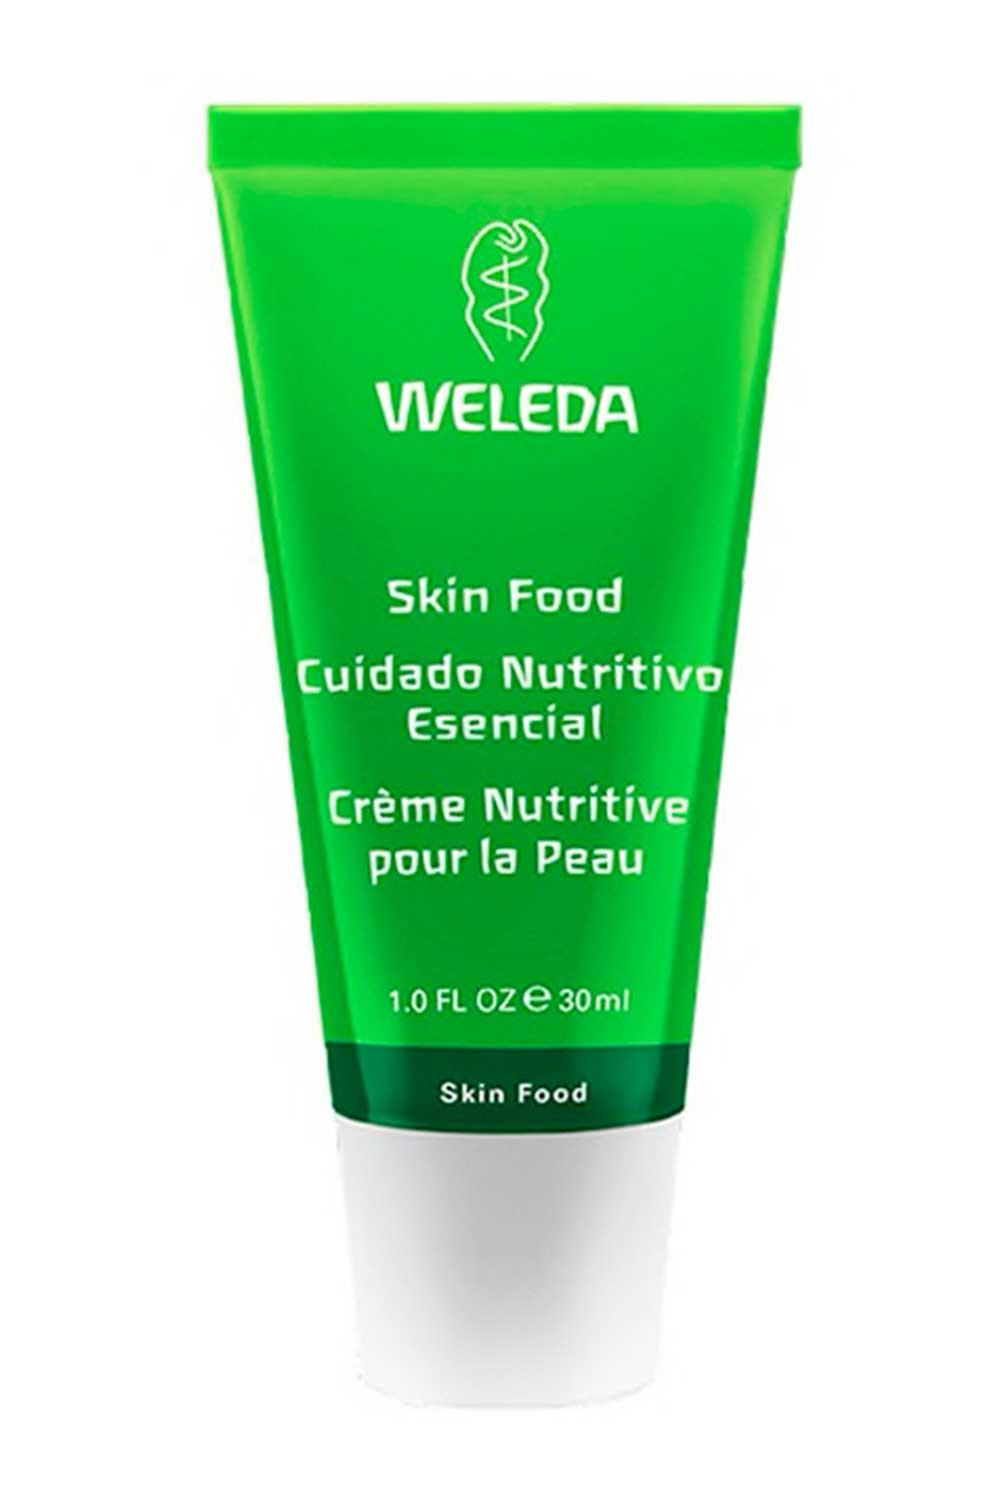 Welleda5. Crema de Plantas Medicinales Skinfood Weleda